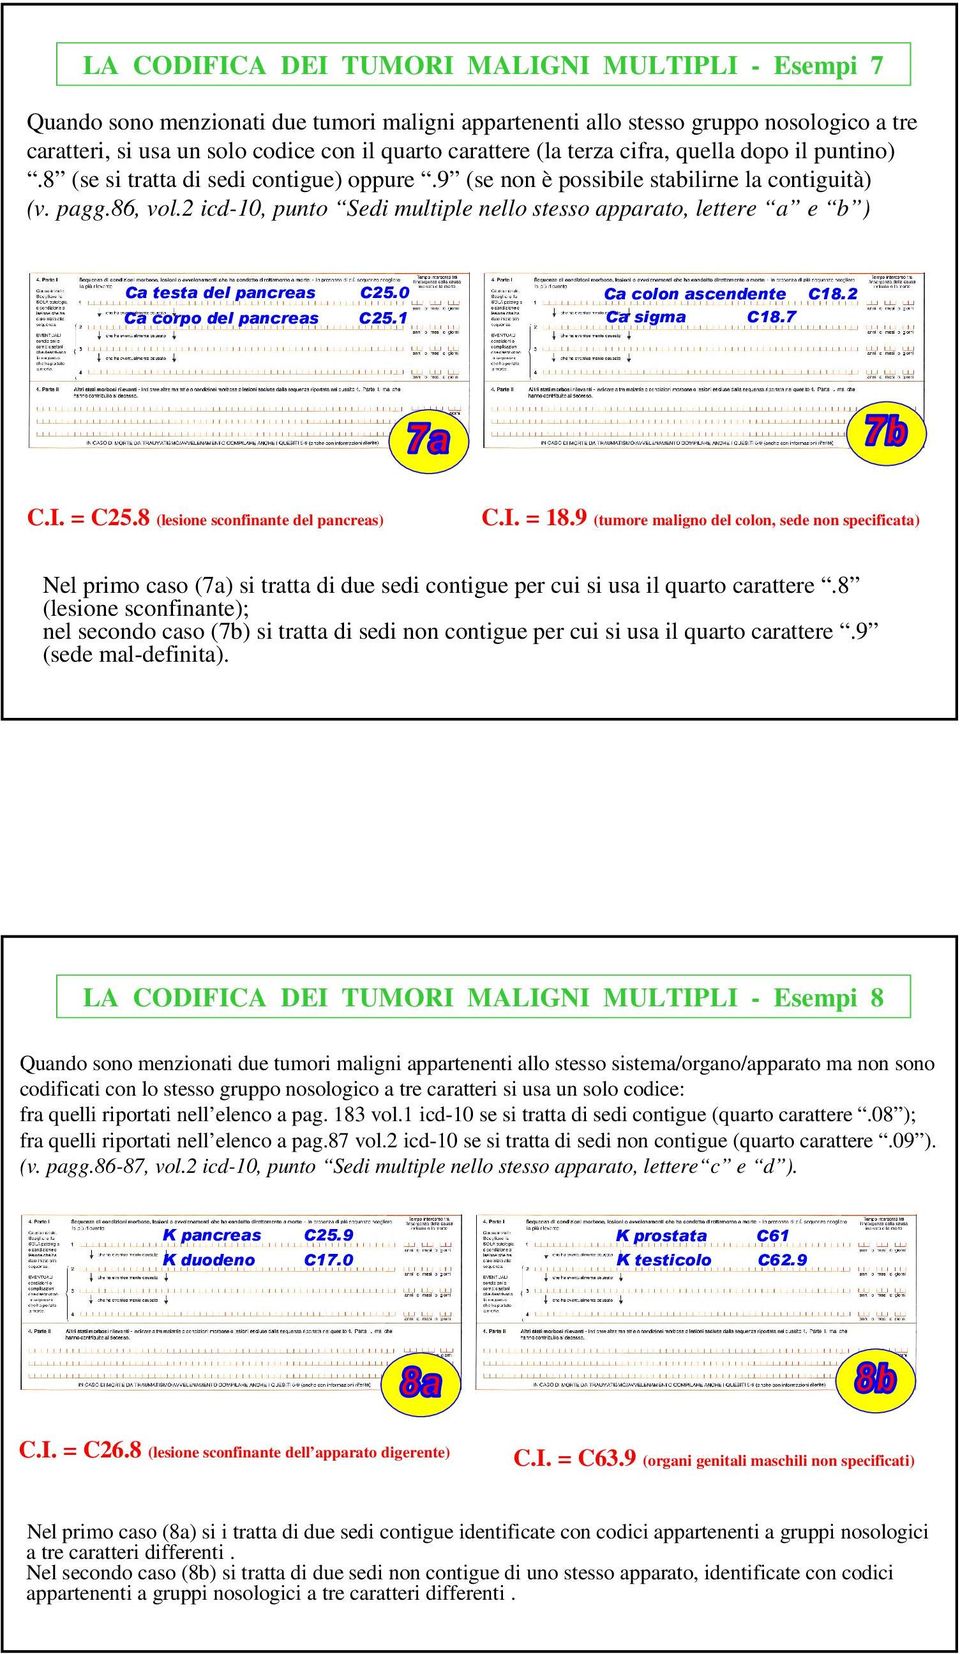 2 icd-10, punto Sedi multiple nello stesso apparato, lettere a e b ) Ca testa del pancreas C25.0 Ca corpo del pancreas C25.1 Ca colon ascendente C18.2 Ca sigma C18.7 C.I. = C25.